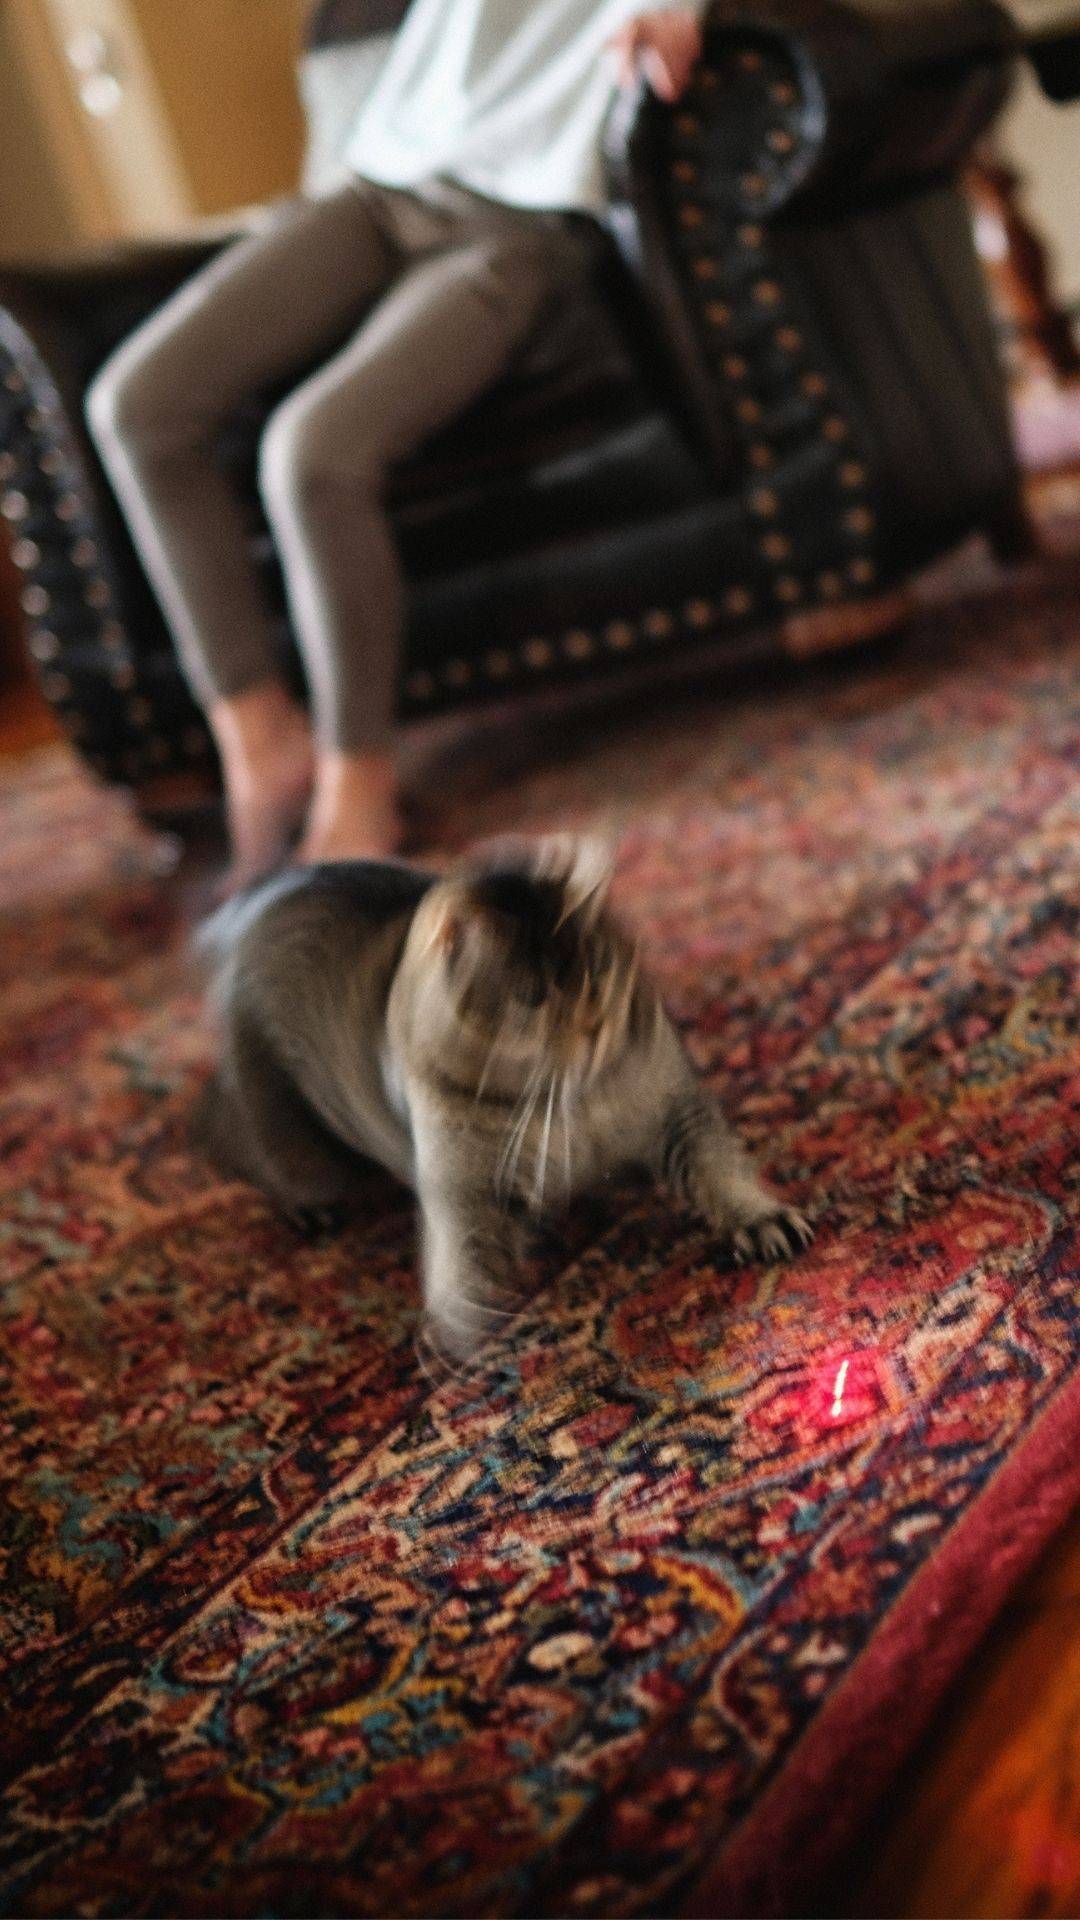 Afinal, gato pode ou não pode brincar com laser? - Pets da Lets